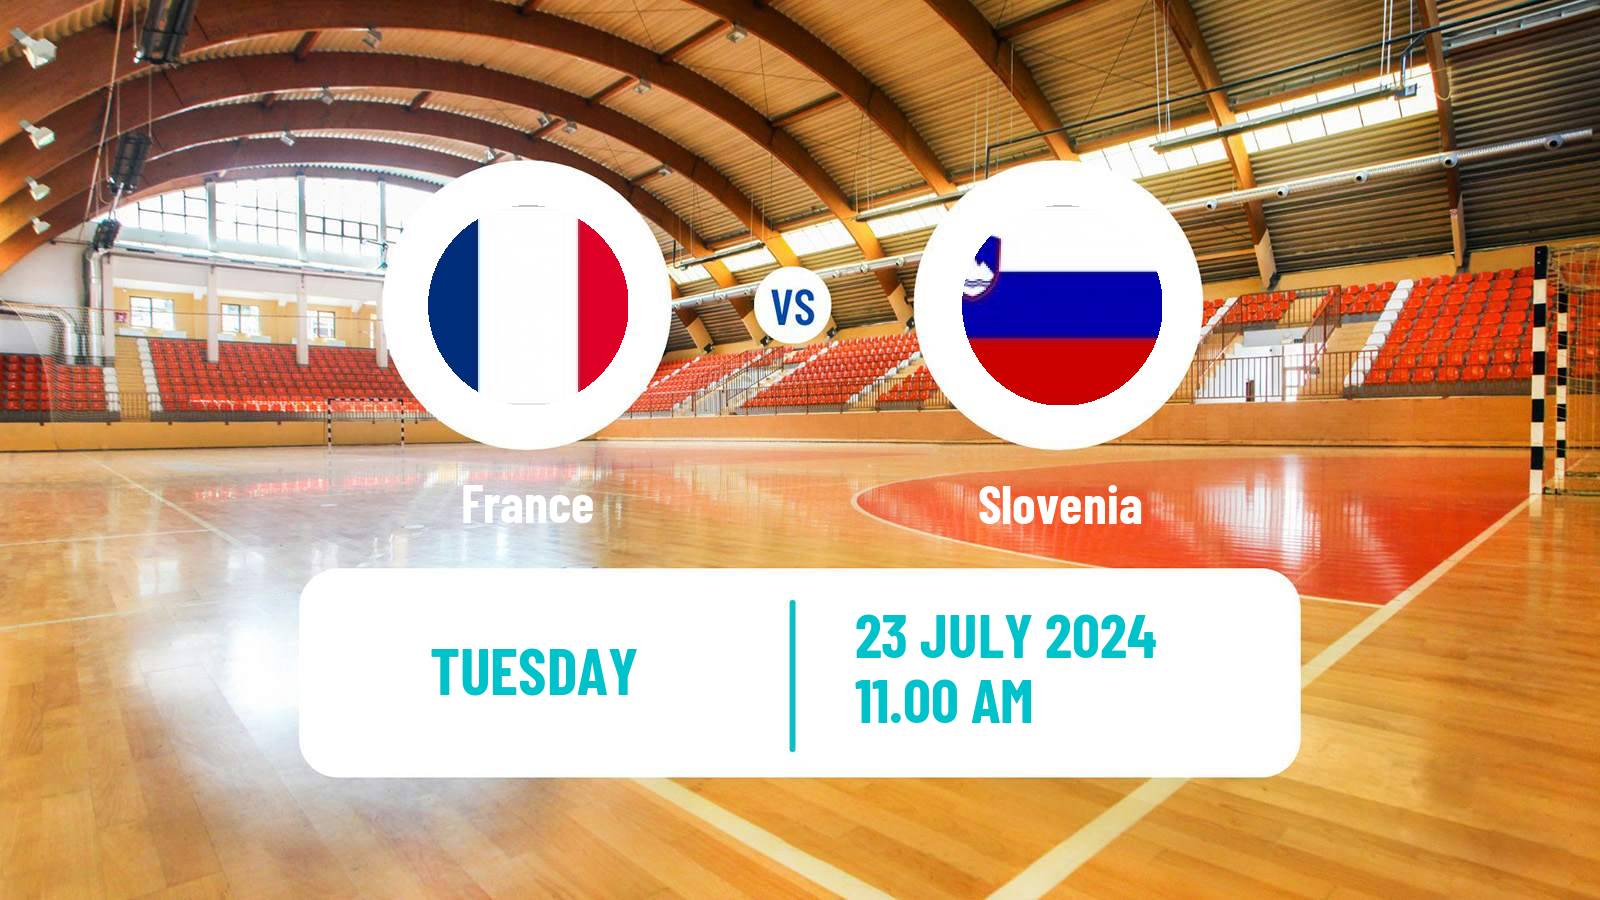 Handball Friendly International Handball France - Slovenia